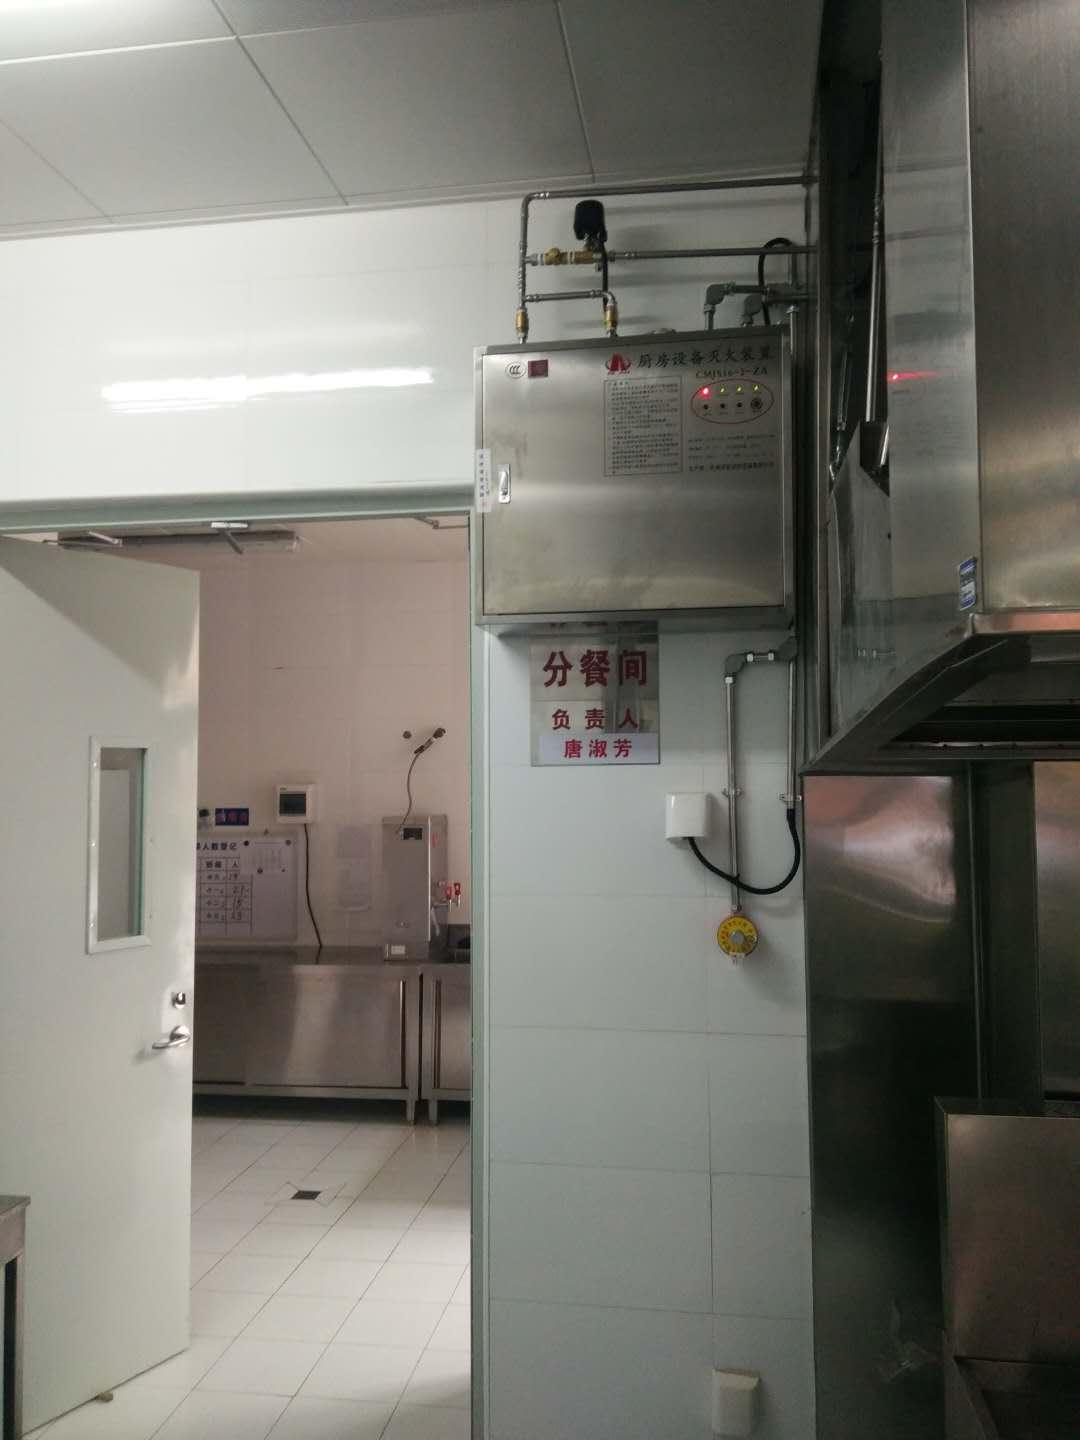 北京廚房自動滅火裝置安裝廠商 歡迎來電咨詢